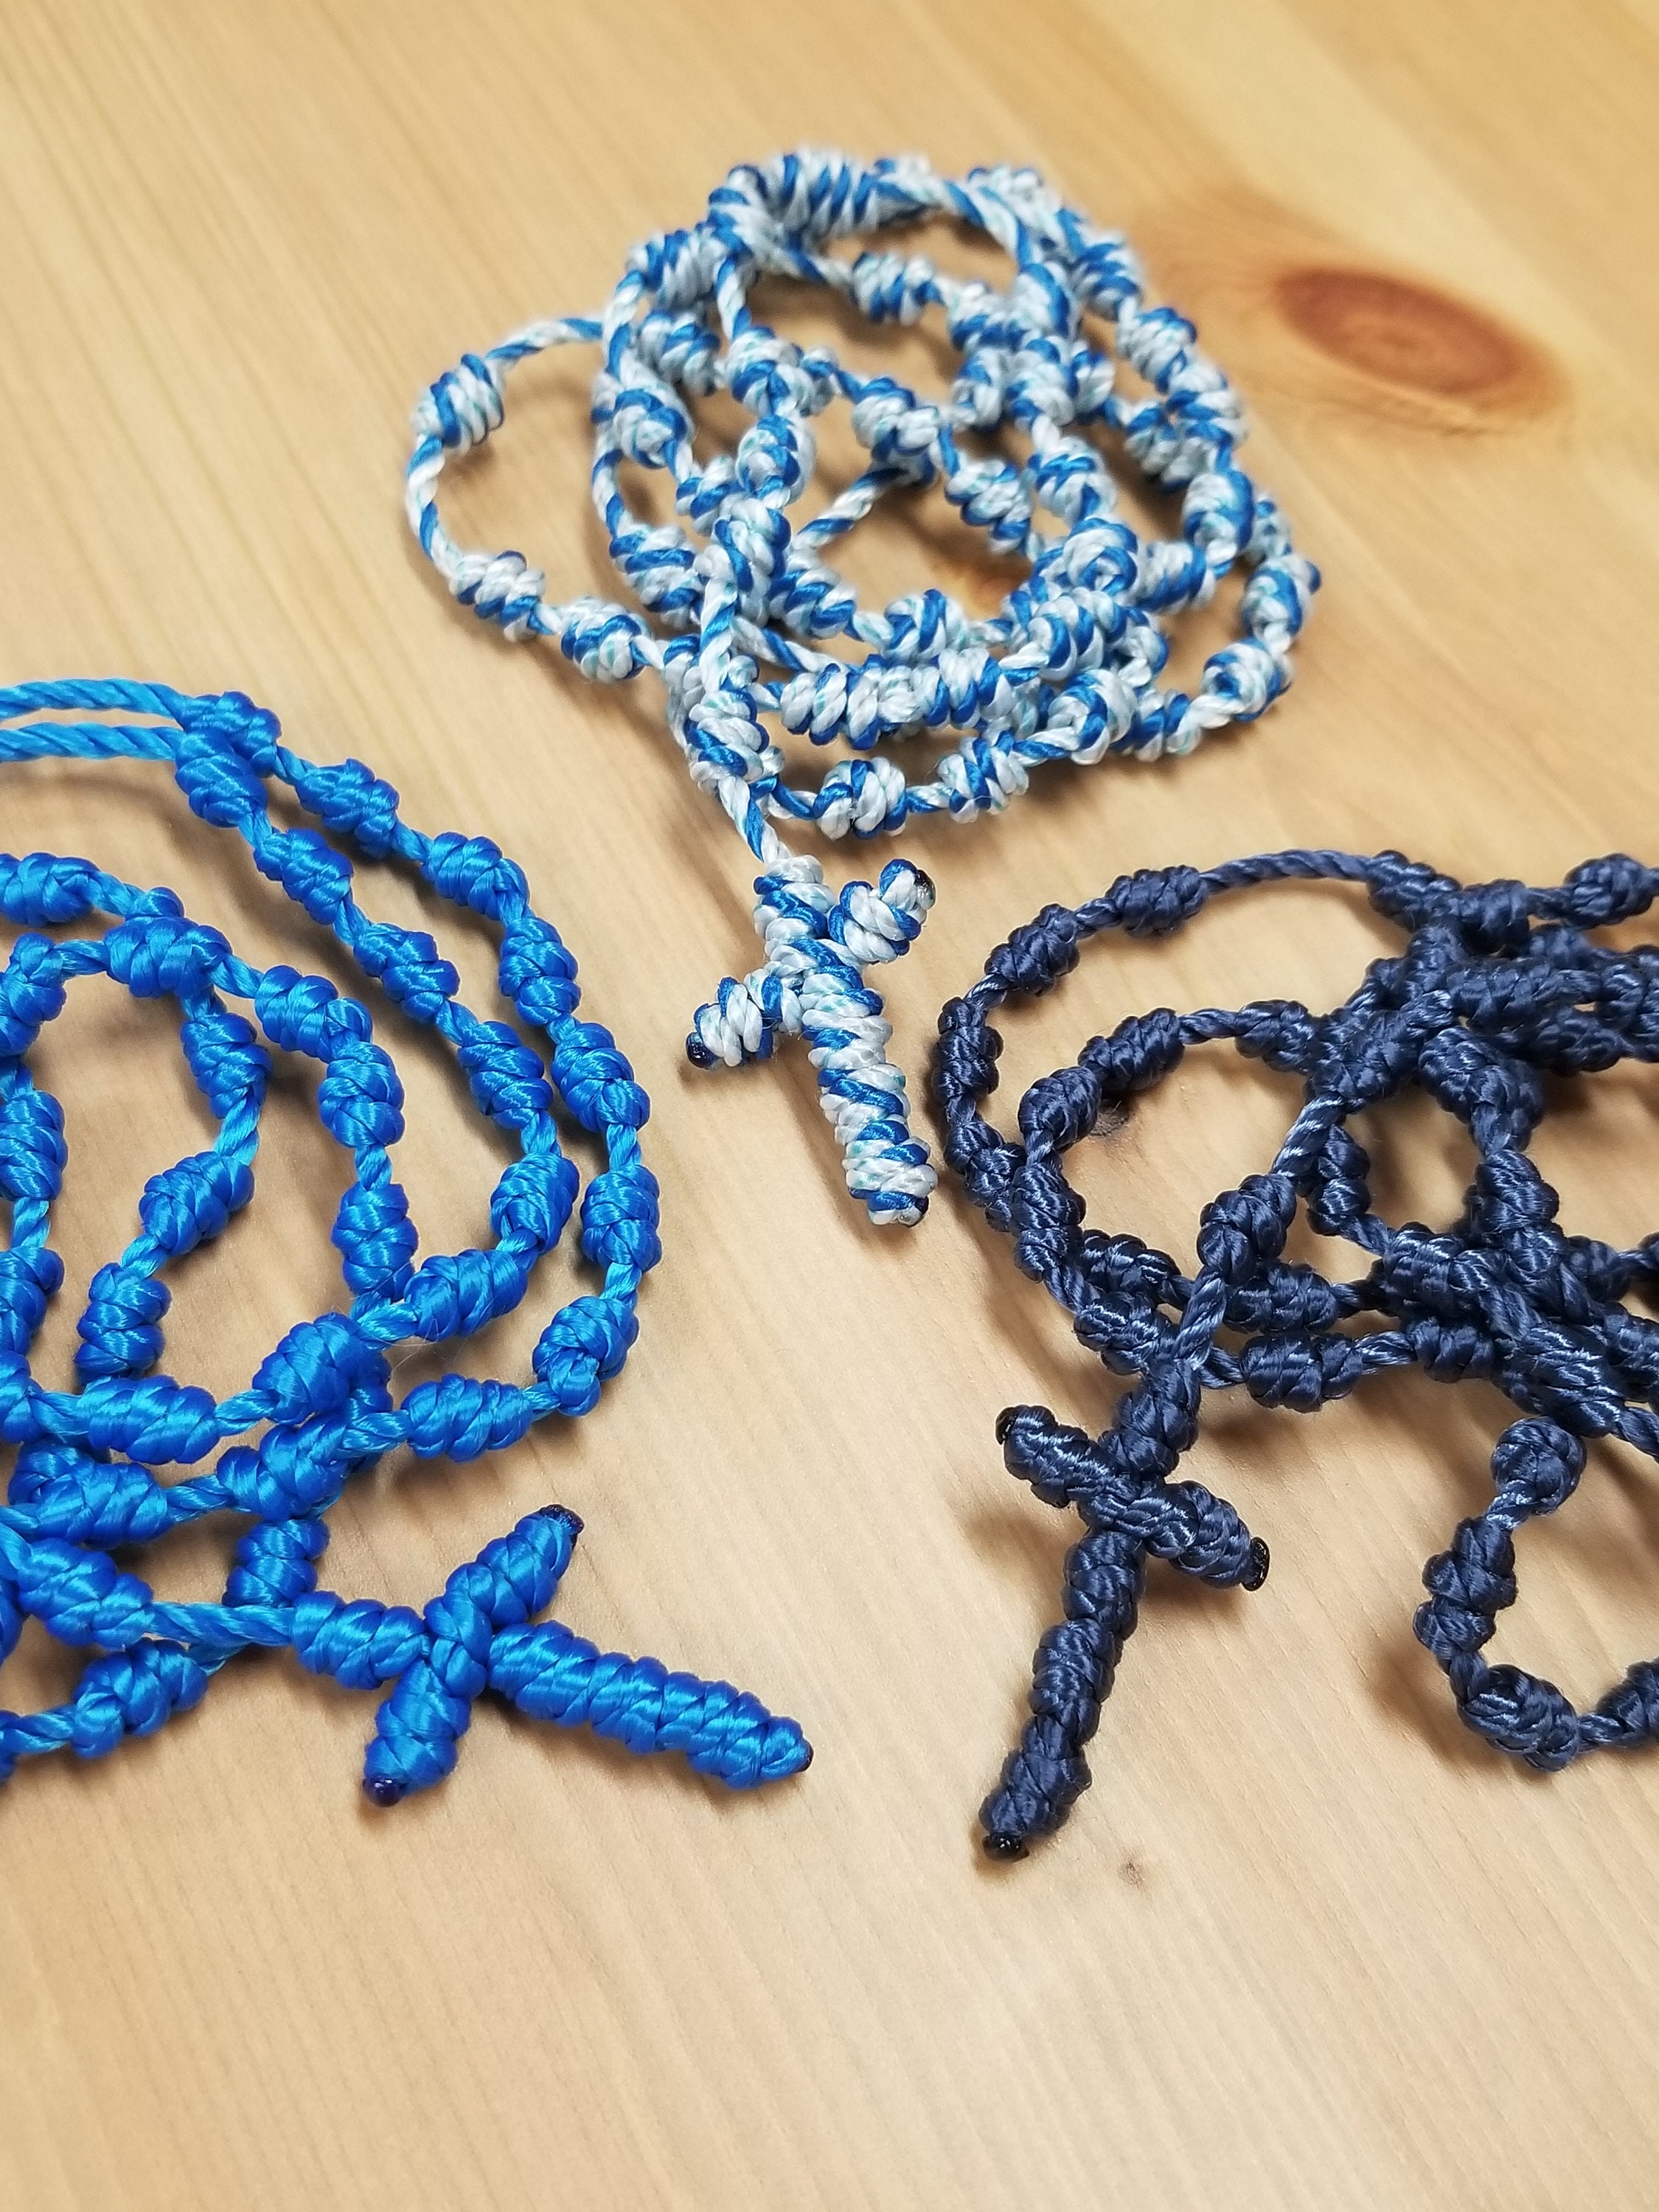 Praying | Ankle bracelets diy, Bracelet crafts, Diy bracelets